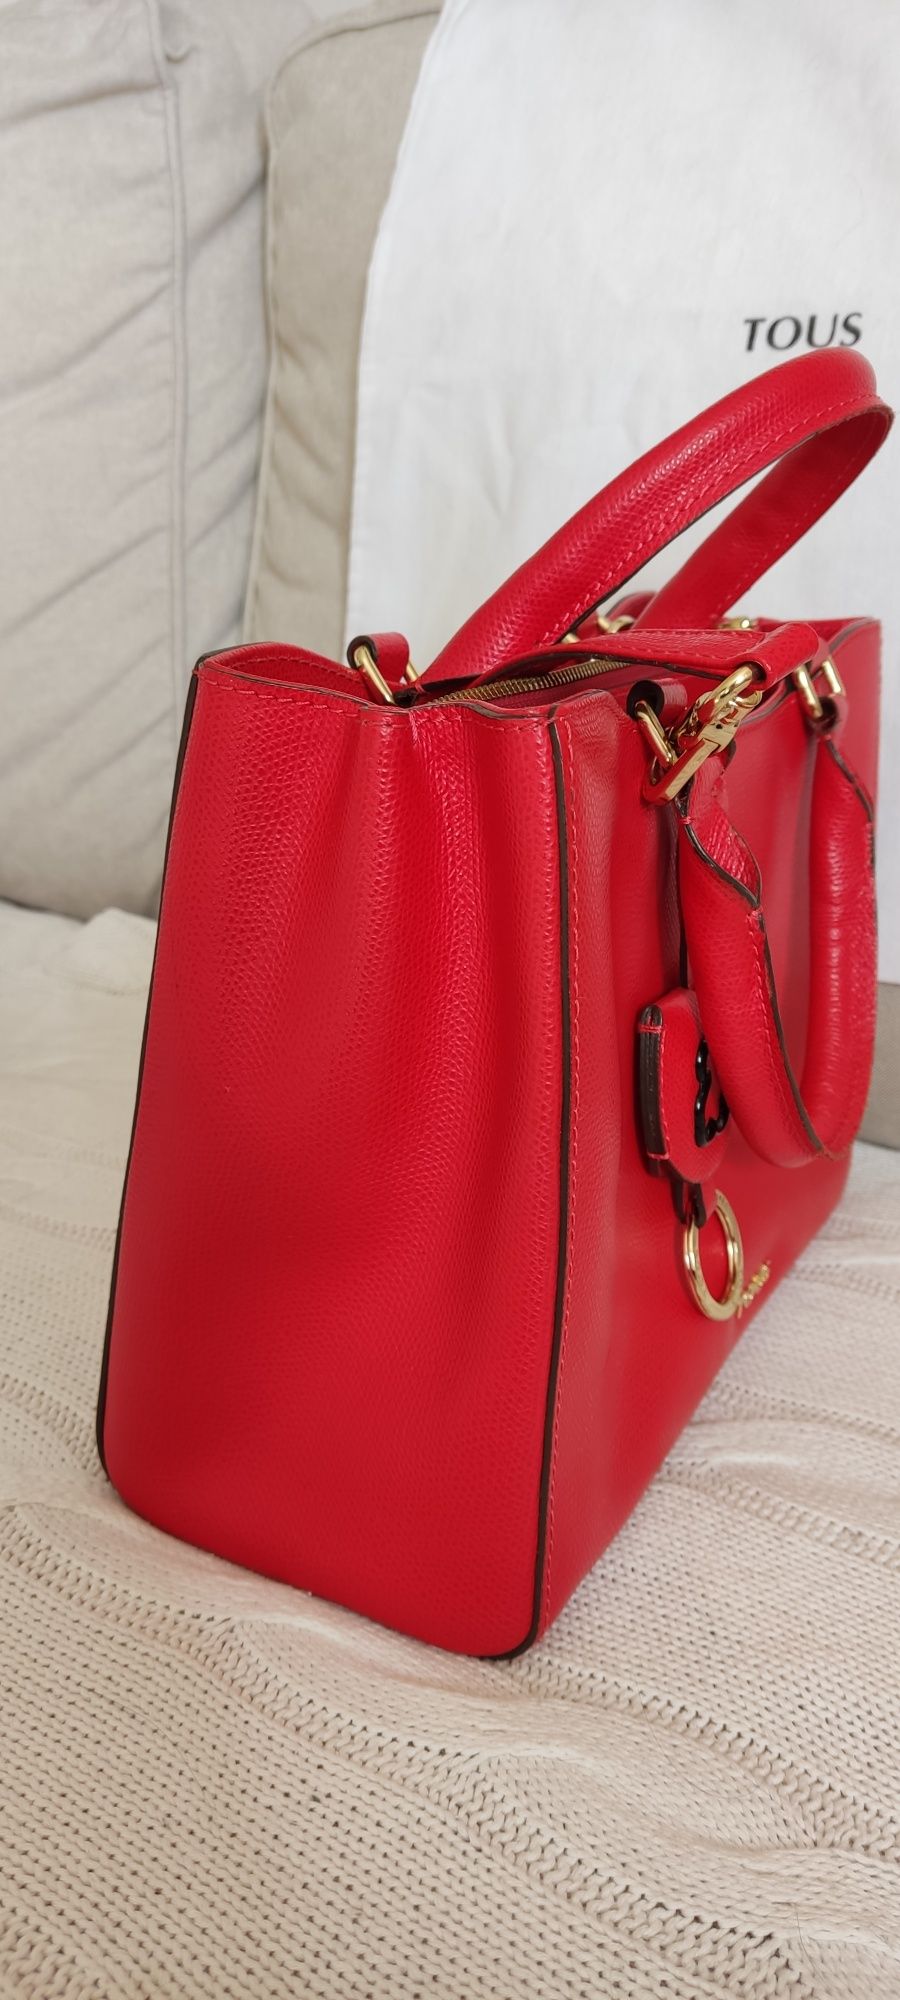 Nowa, piękna torebka Tous, czerwona